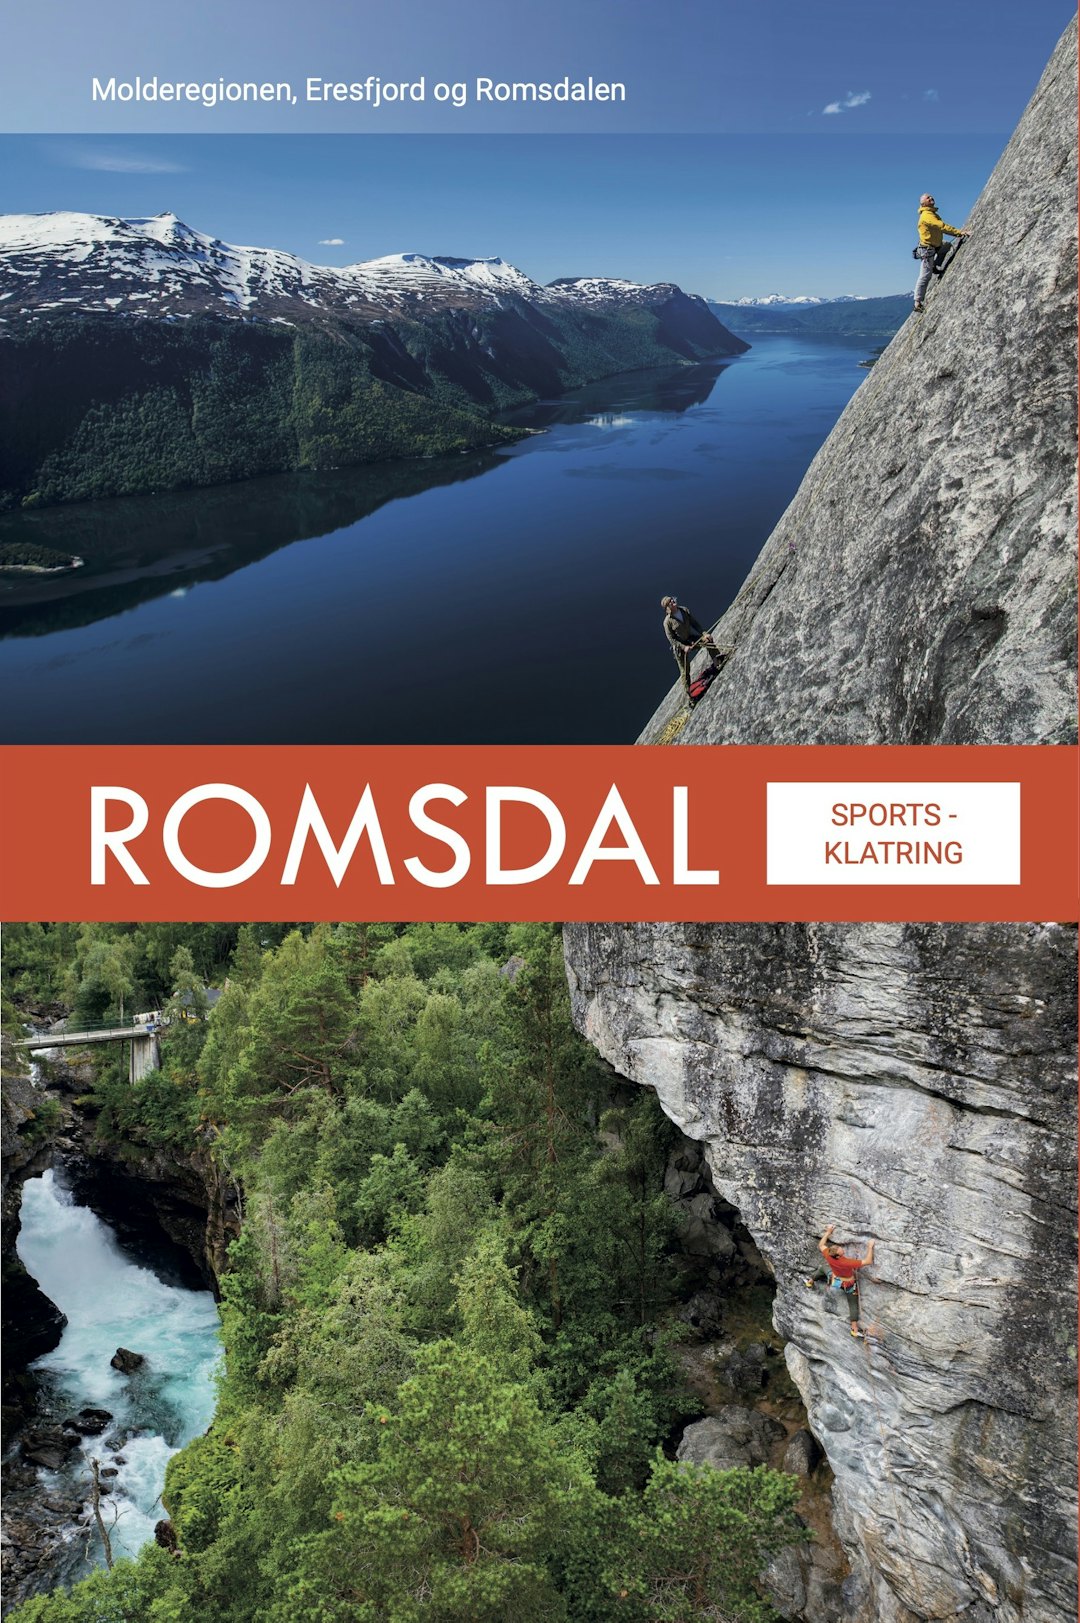 PÅ FORSIDEN: Iver Gjelstenli er en legende i klatremiljøet i Romsdal. Han omkom på Store Vengetind i juni 2020, men lever videre på forsiden av den nye klatreføreren. Bildene er tatt av Terje Aamodt.